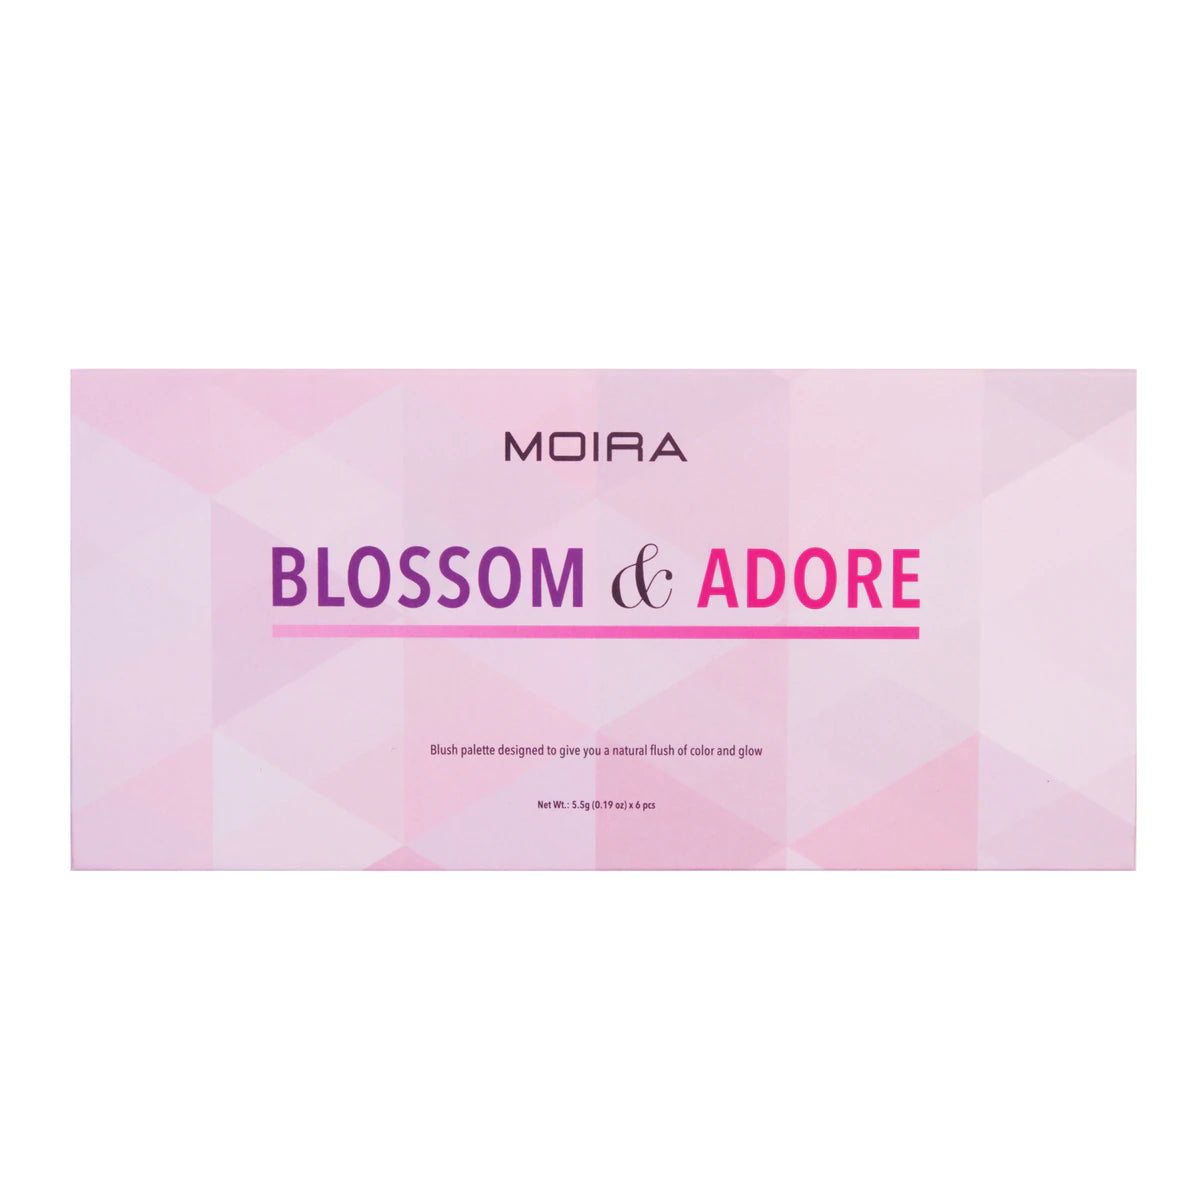 Blossom & Adore